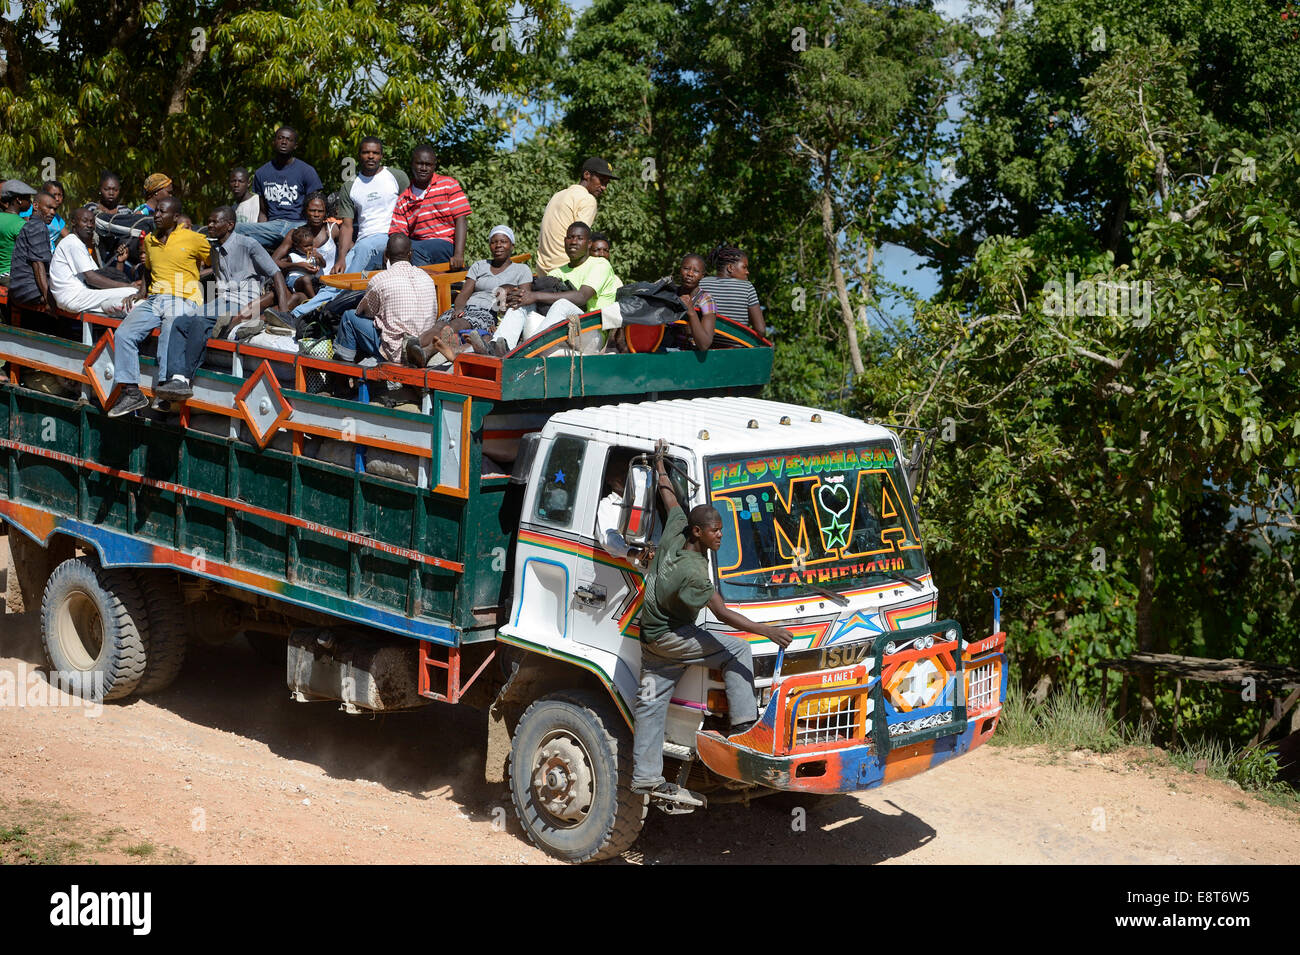 camion-utilizado-para-transportar-personas-leogane-haiti-e8t6w5.jpg